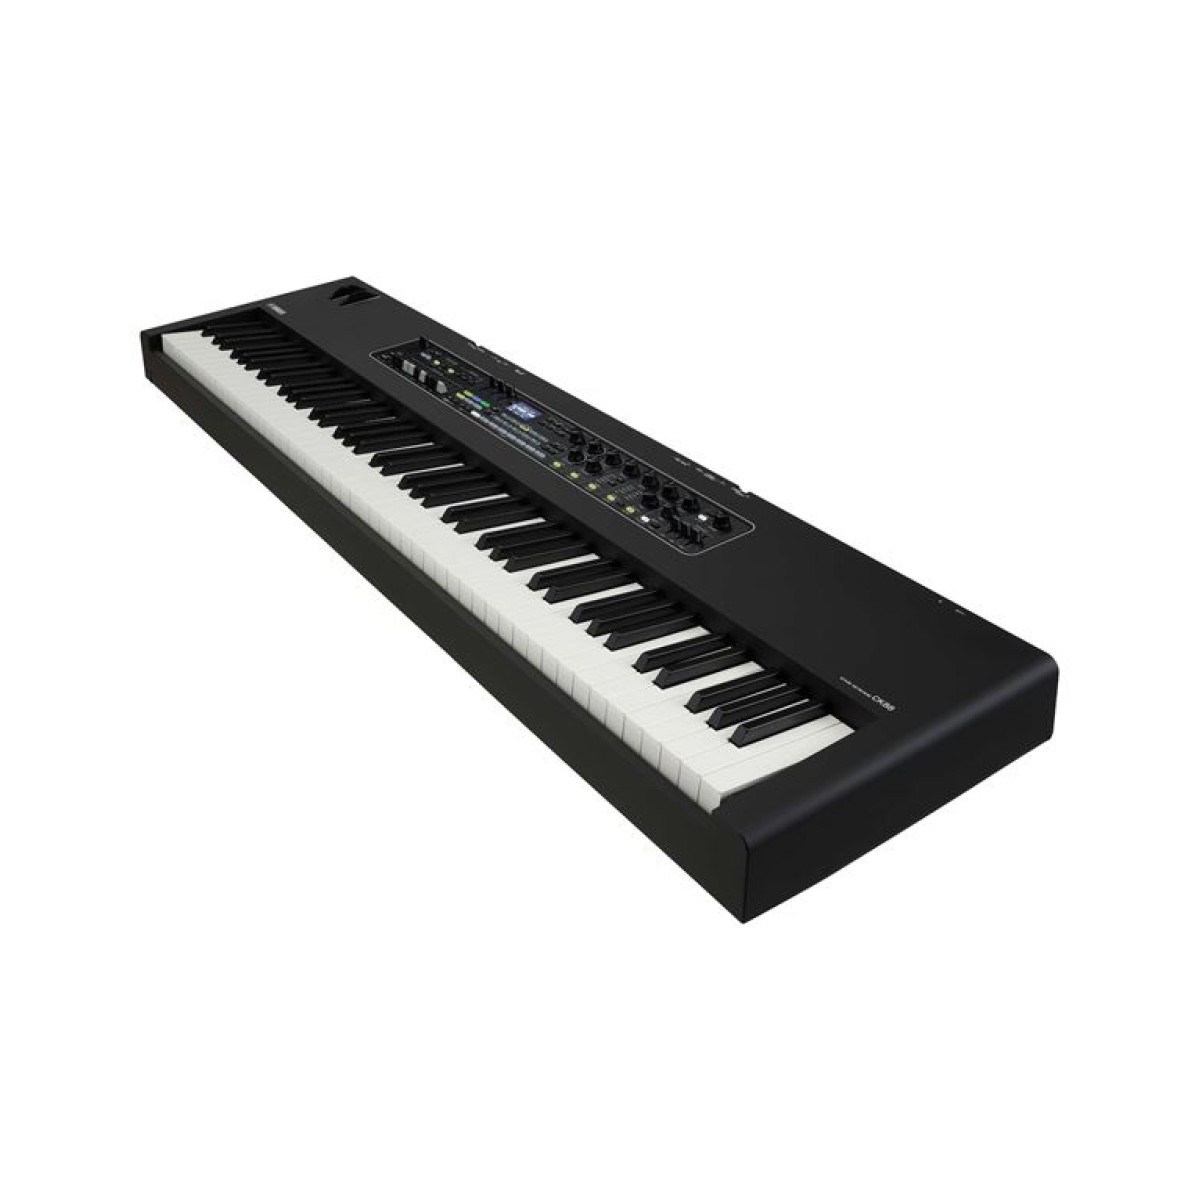 YAMAHA CK88 Stage Keyboard - Synthesizer